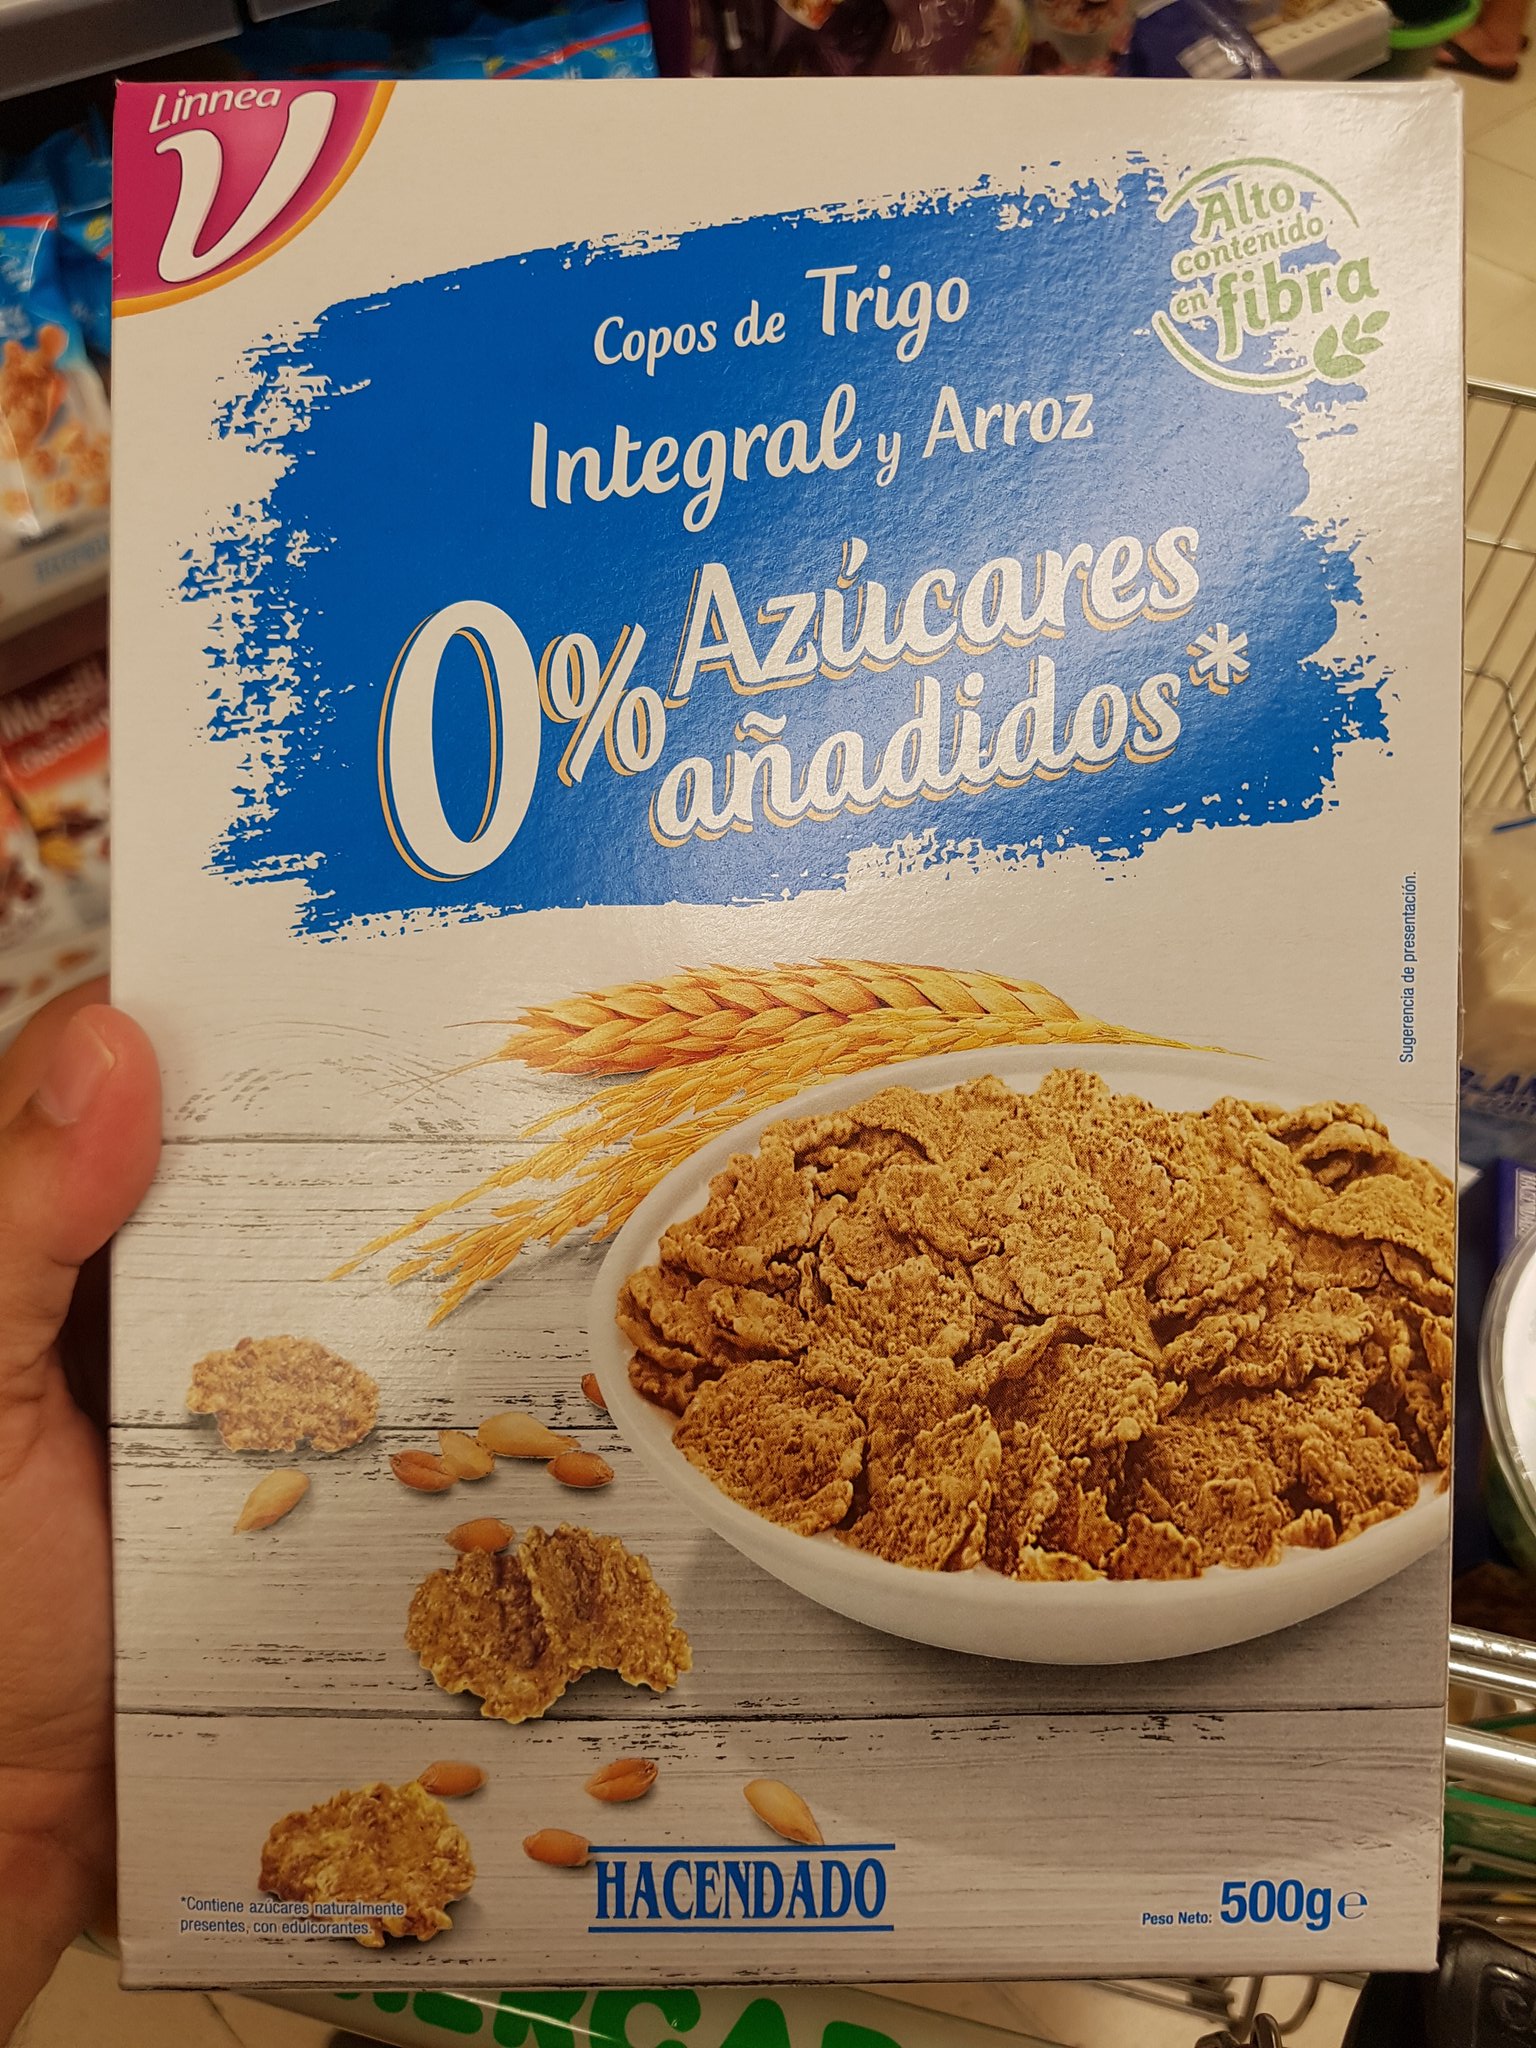 Fernando Trujillo on X: Me pregunto que le parecerán a mis amigos  @SinAzucarOrg @anarore_DN @Midietacojea estos cereales sin azucar de  Hacendado:  / X